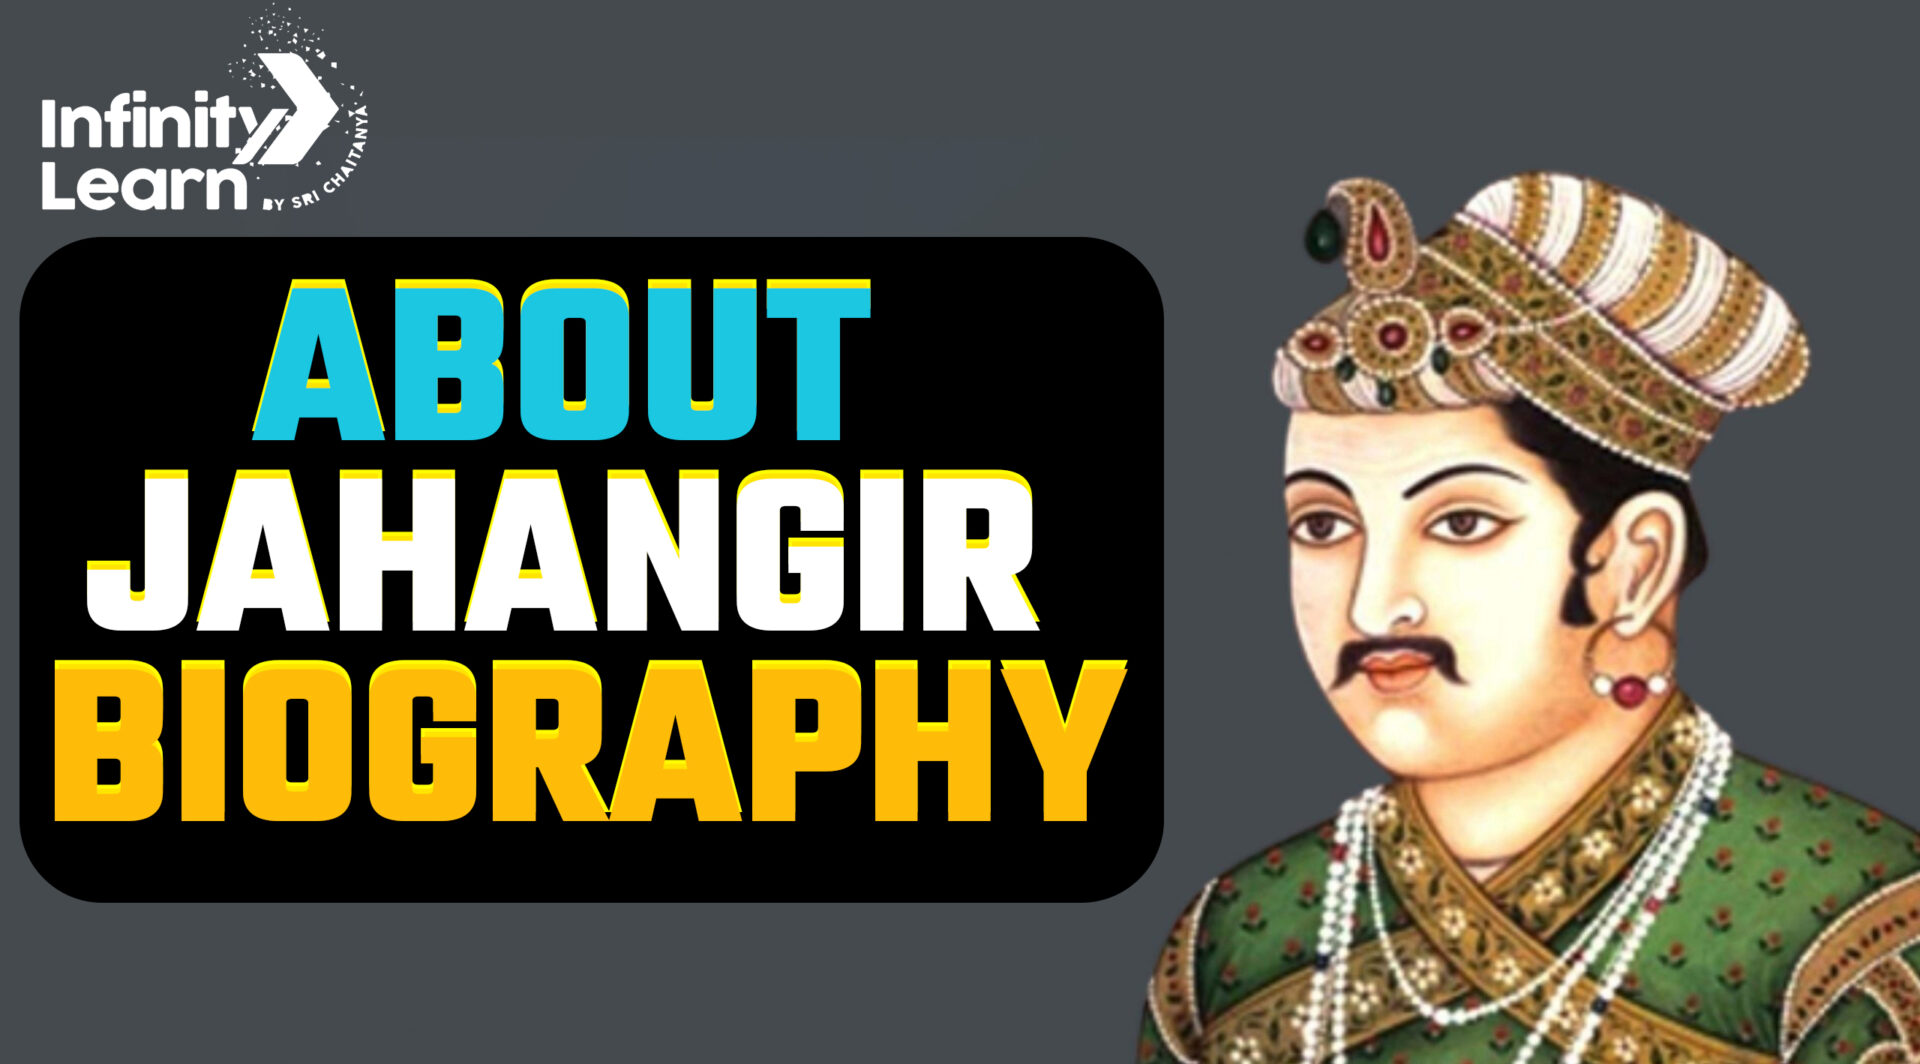 About Jahangir